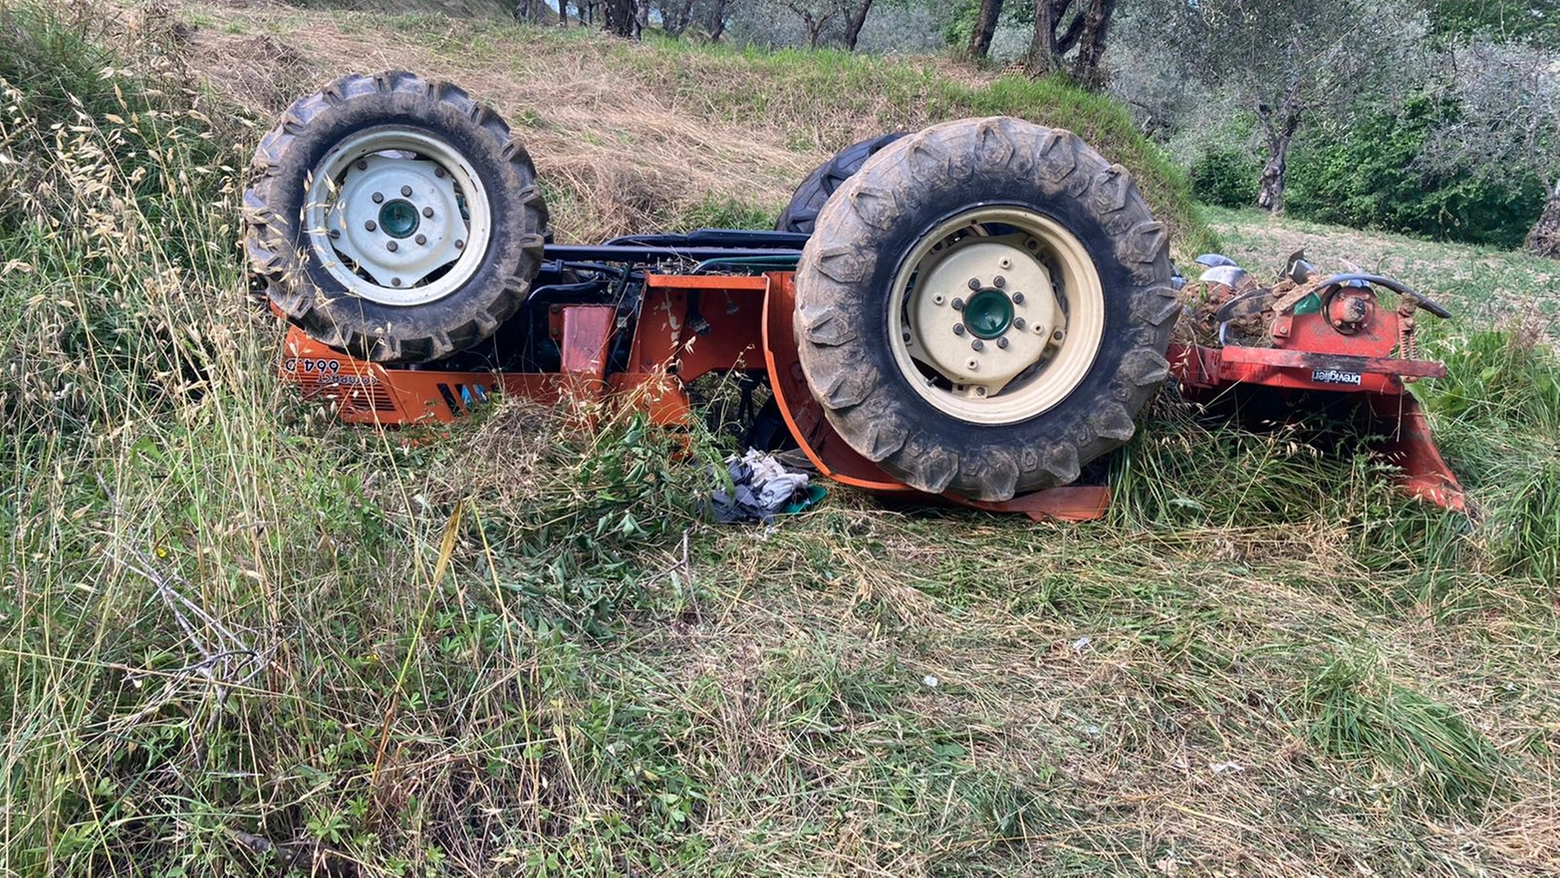 Incidente nella zona boschiva della frazione Pontagna: l’uomo, residente a Vezza D’Oglio, è rimasto schiacciato sotto il veicolo